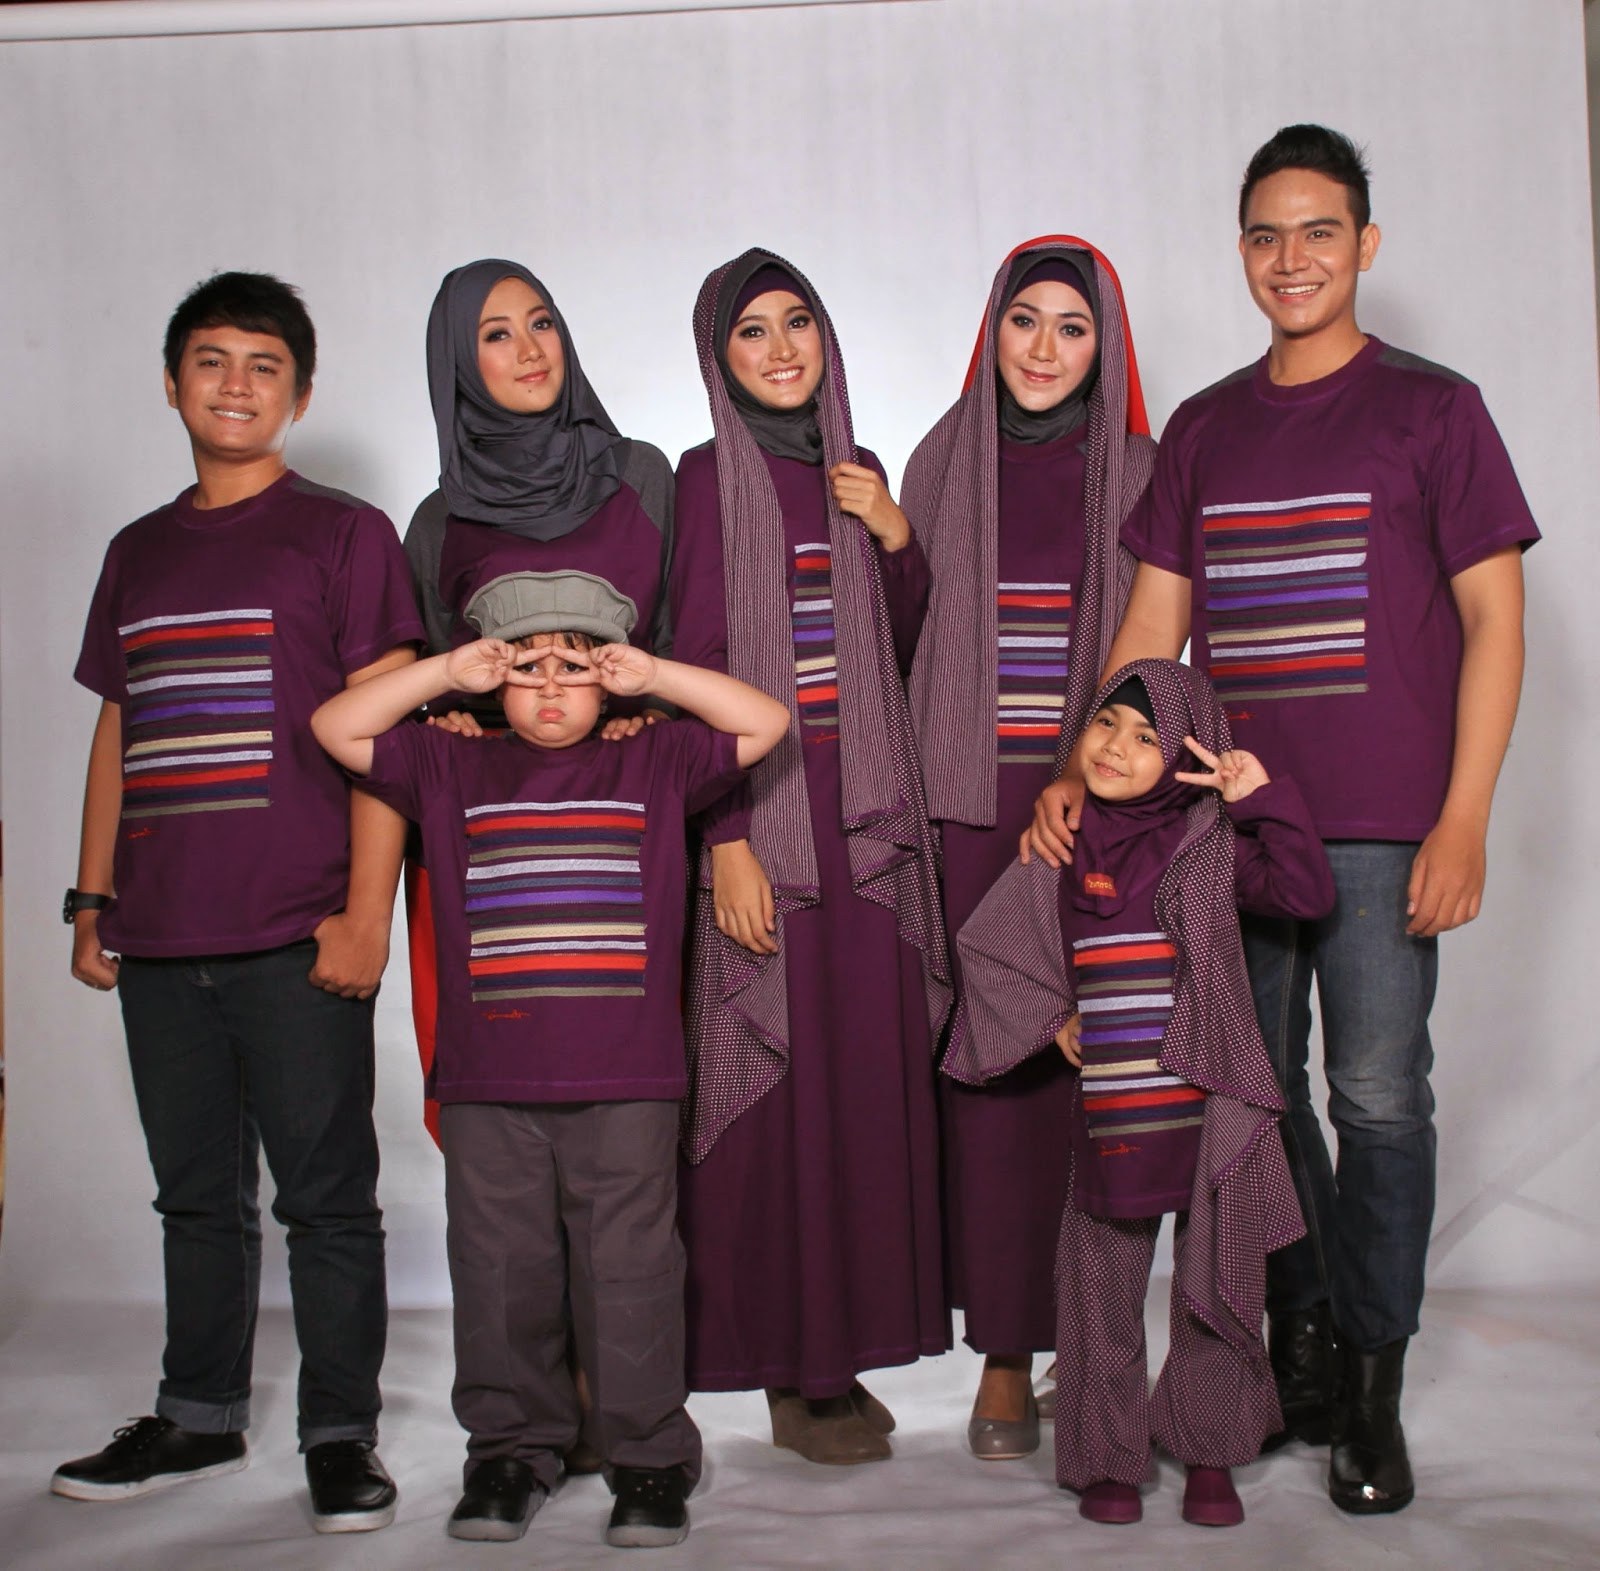 Bentuk Baju Lebaran Anak 2017 Rldj Model Baju Keluarga Untuk Hari Raya Lebaran 2018